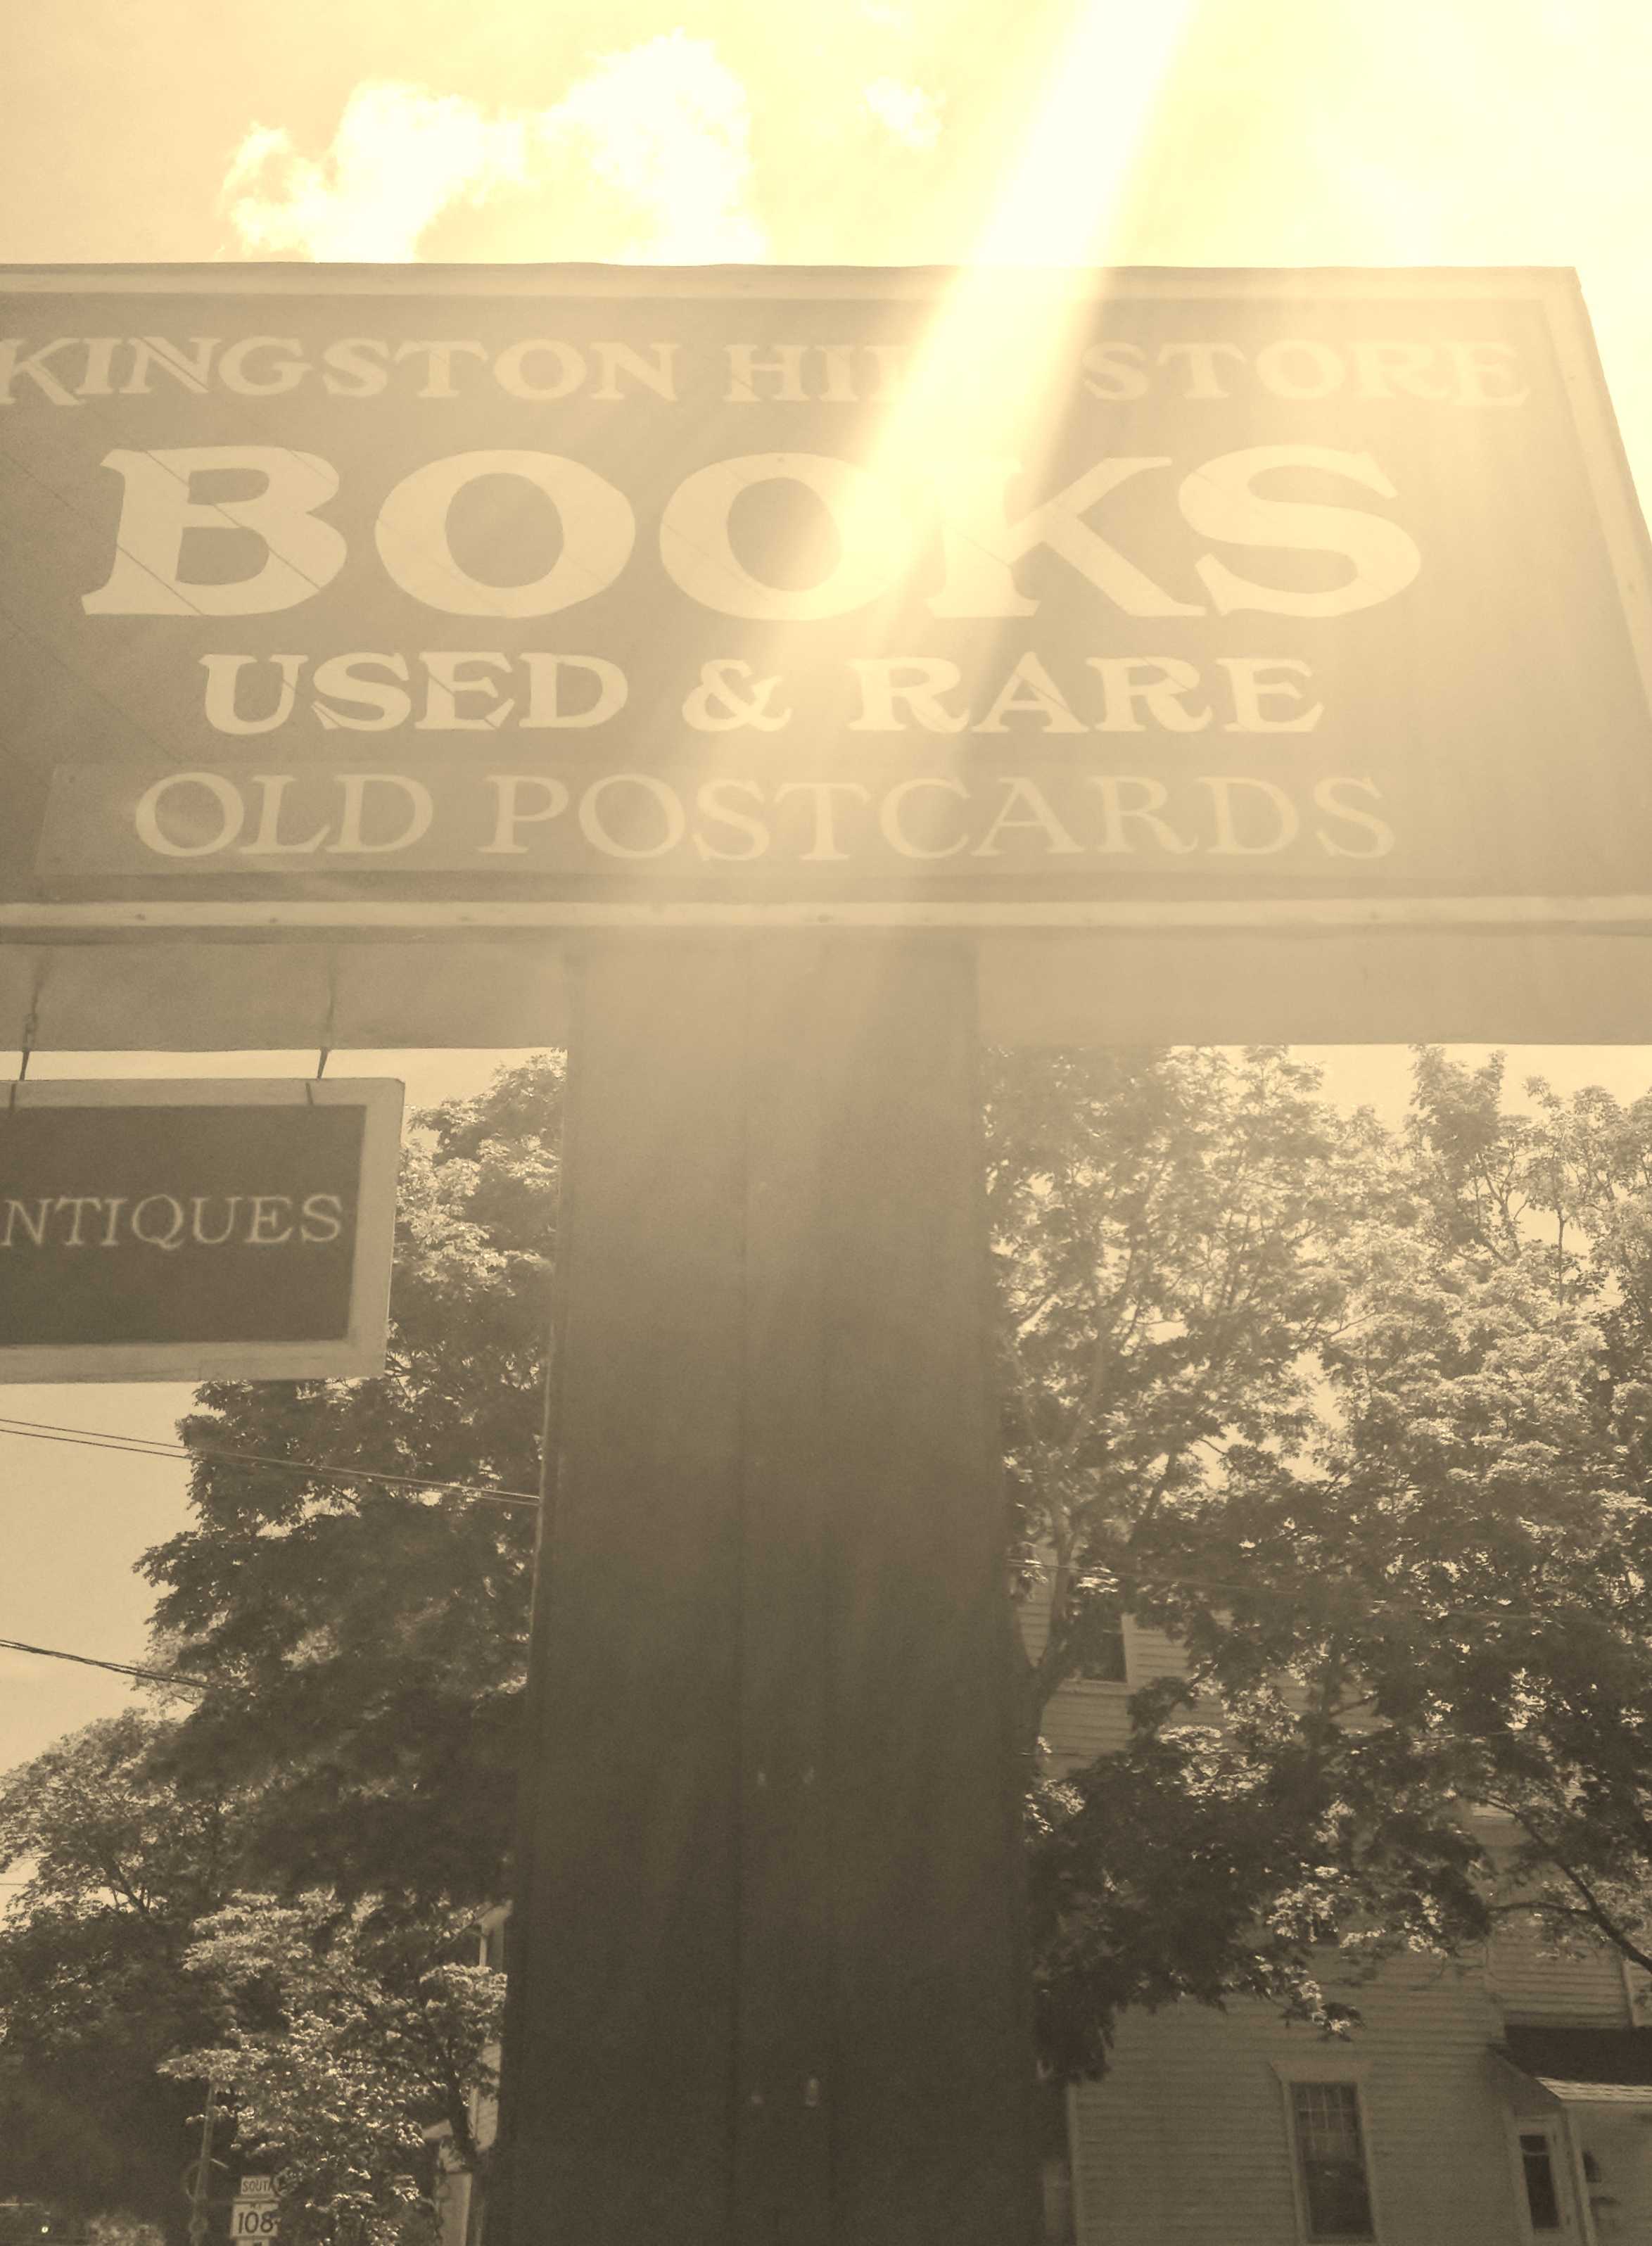 Kingston-Hill-Store-sign.jpg